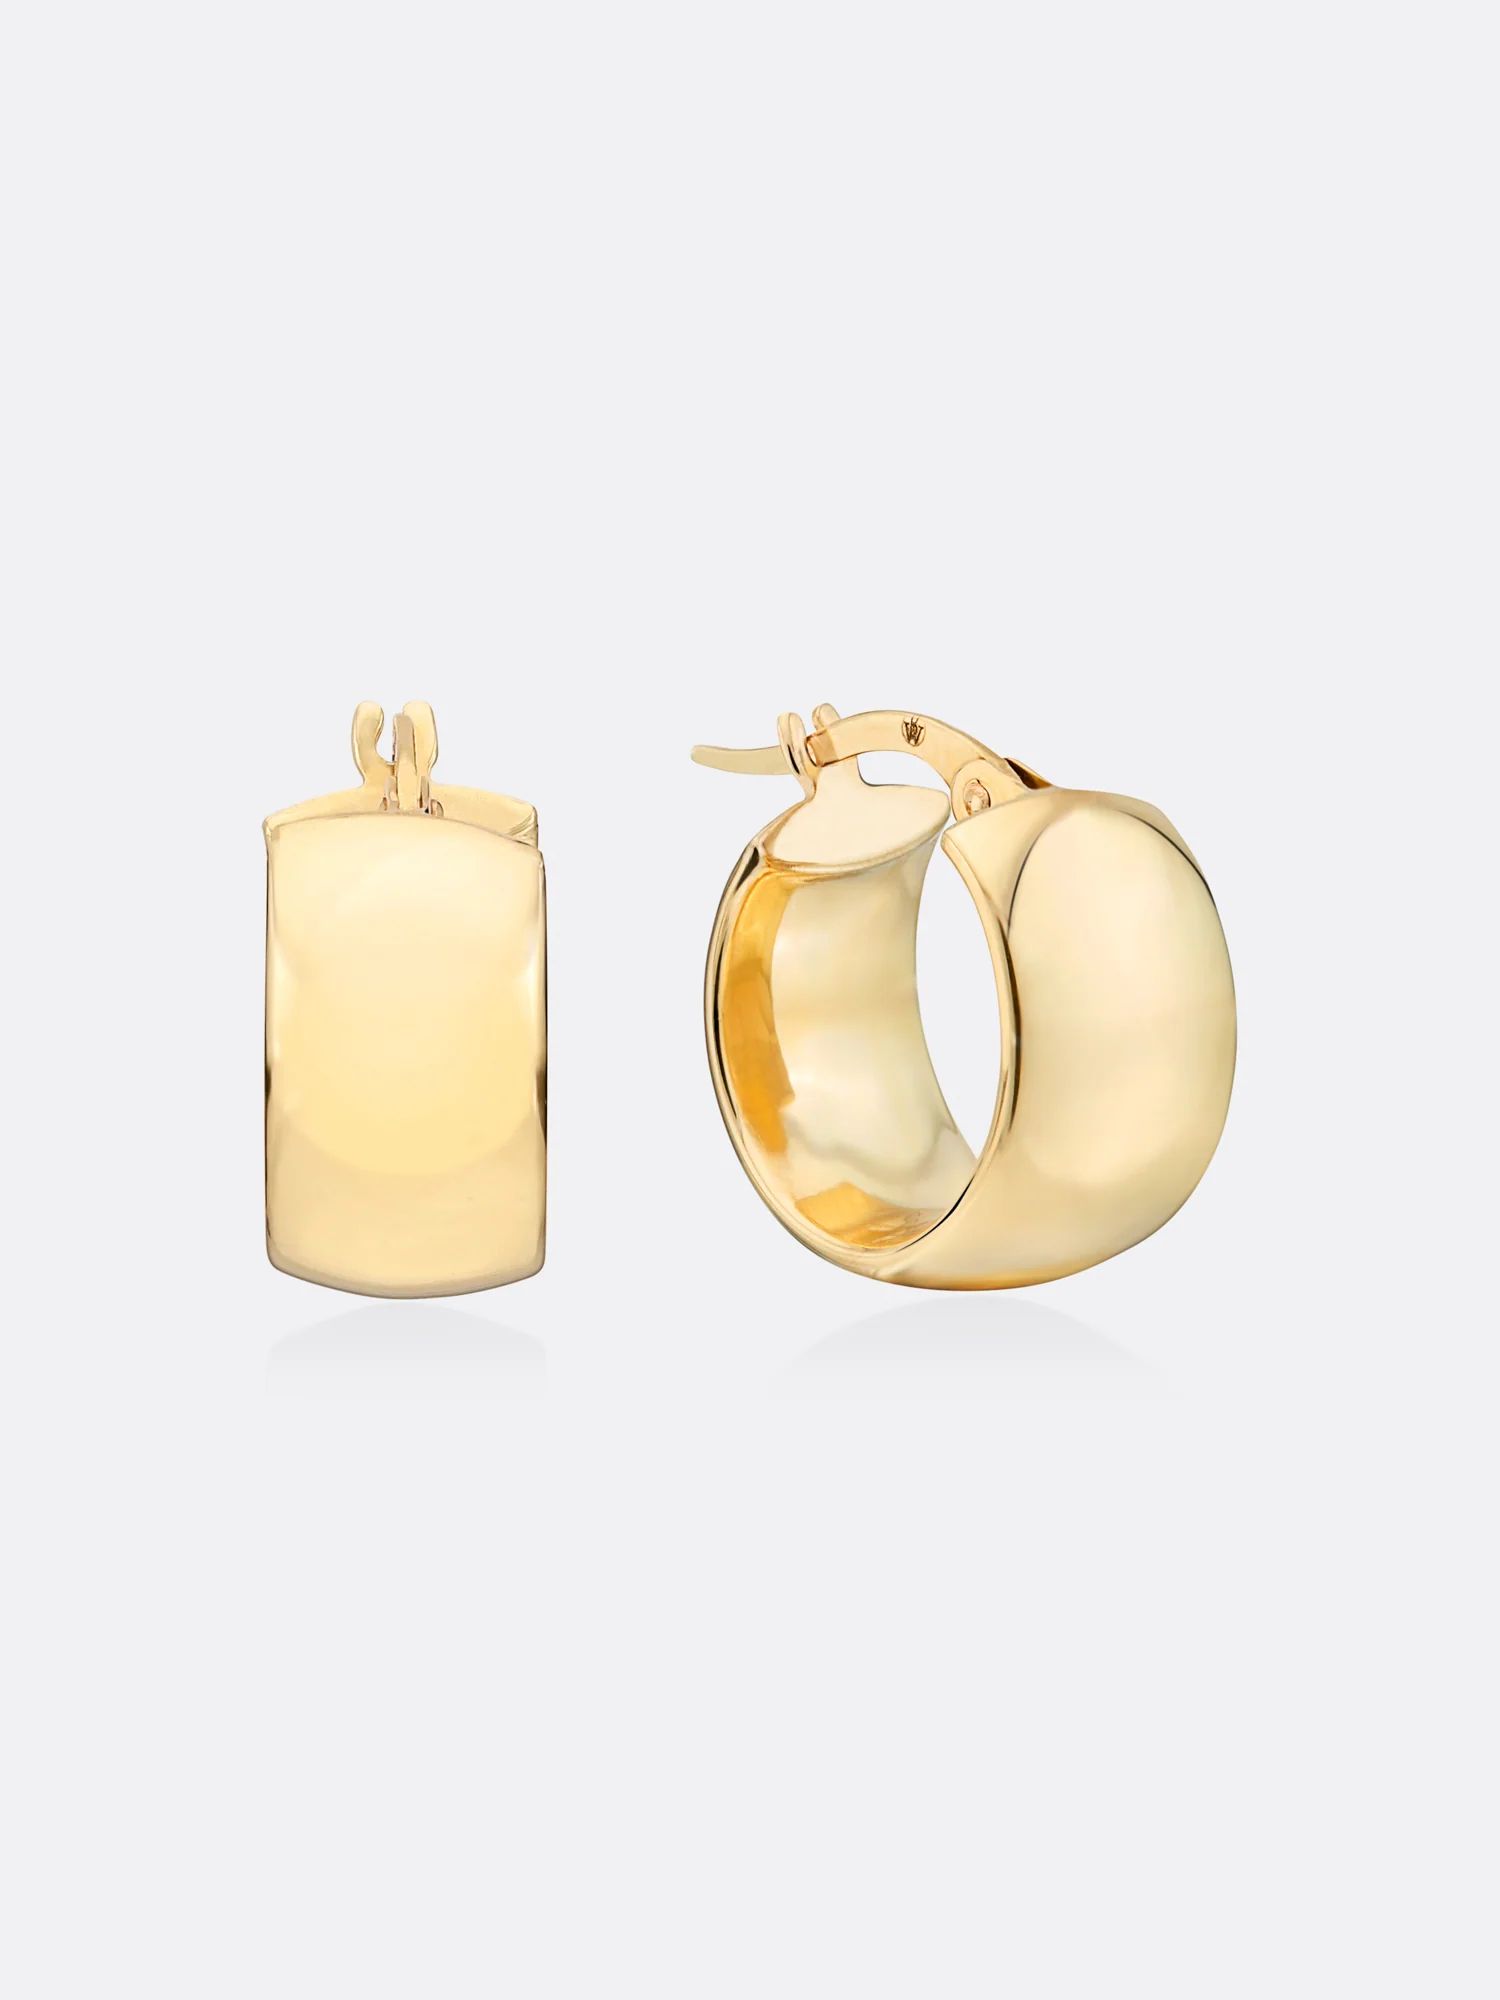 Brochu Walker | Women's Fine Jewelry Icons Yellow Gold Mini Hoop Earrings | Brochu Walker